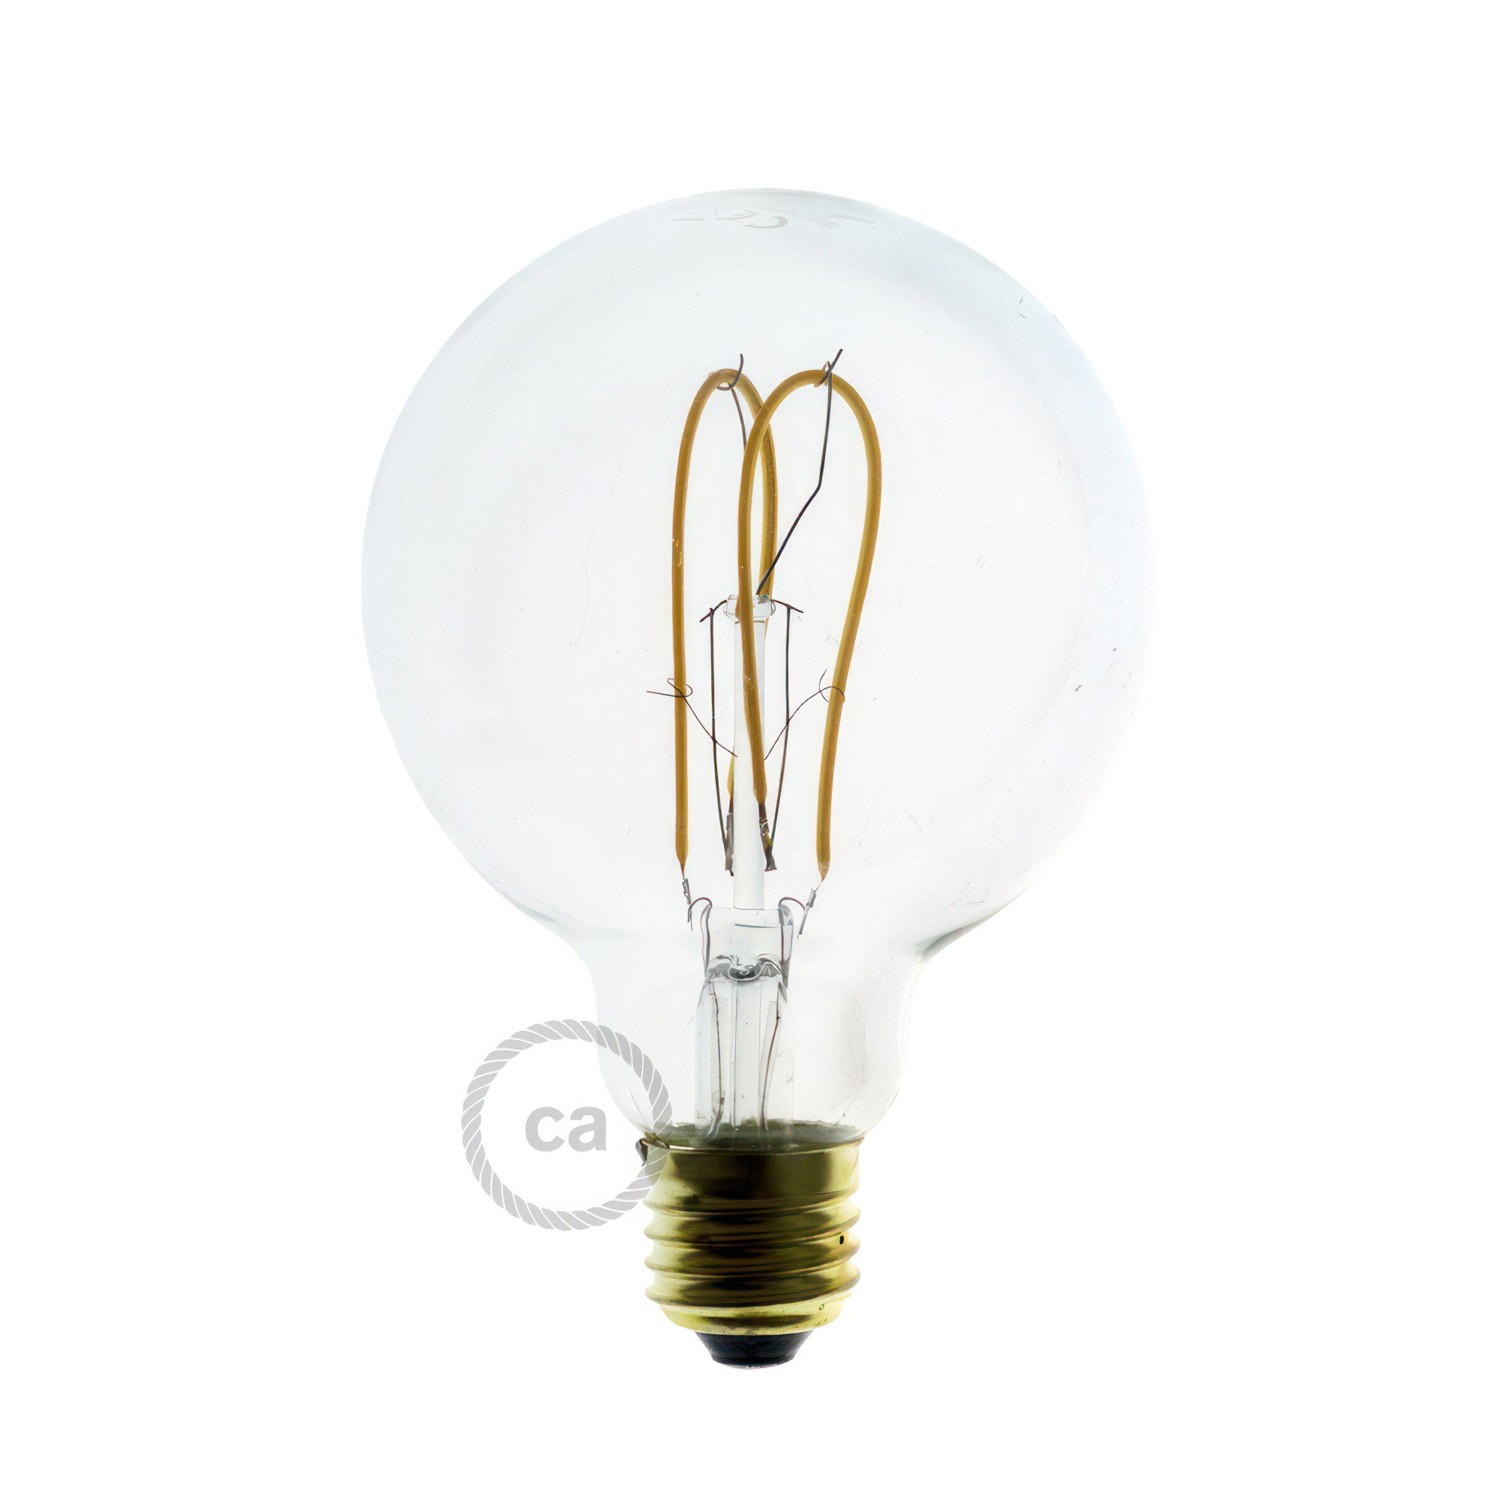 Flex 60 applique ou plafonnier articulé à lumière diffuse avec ampoule LED G95